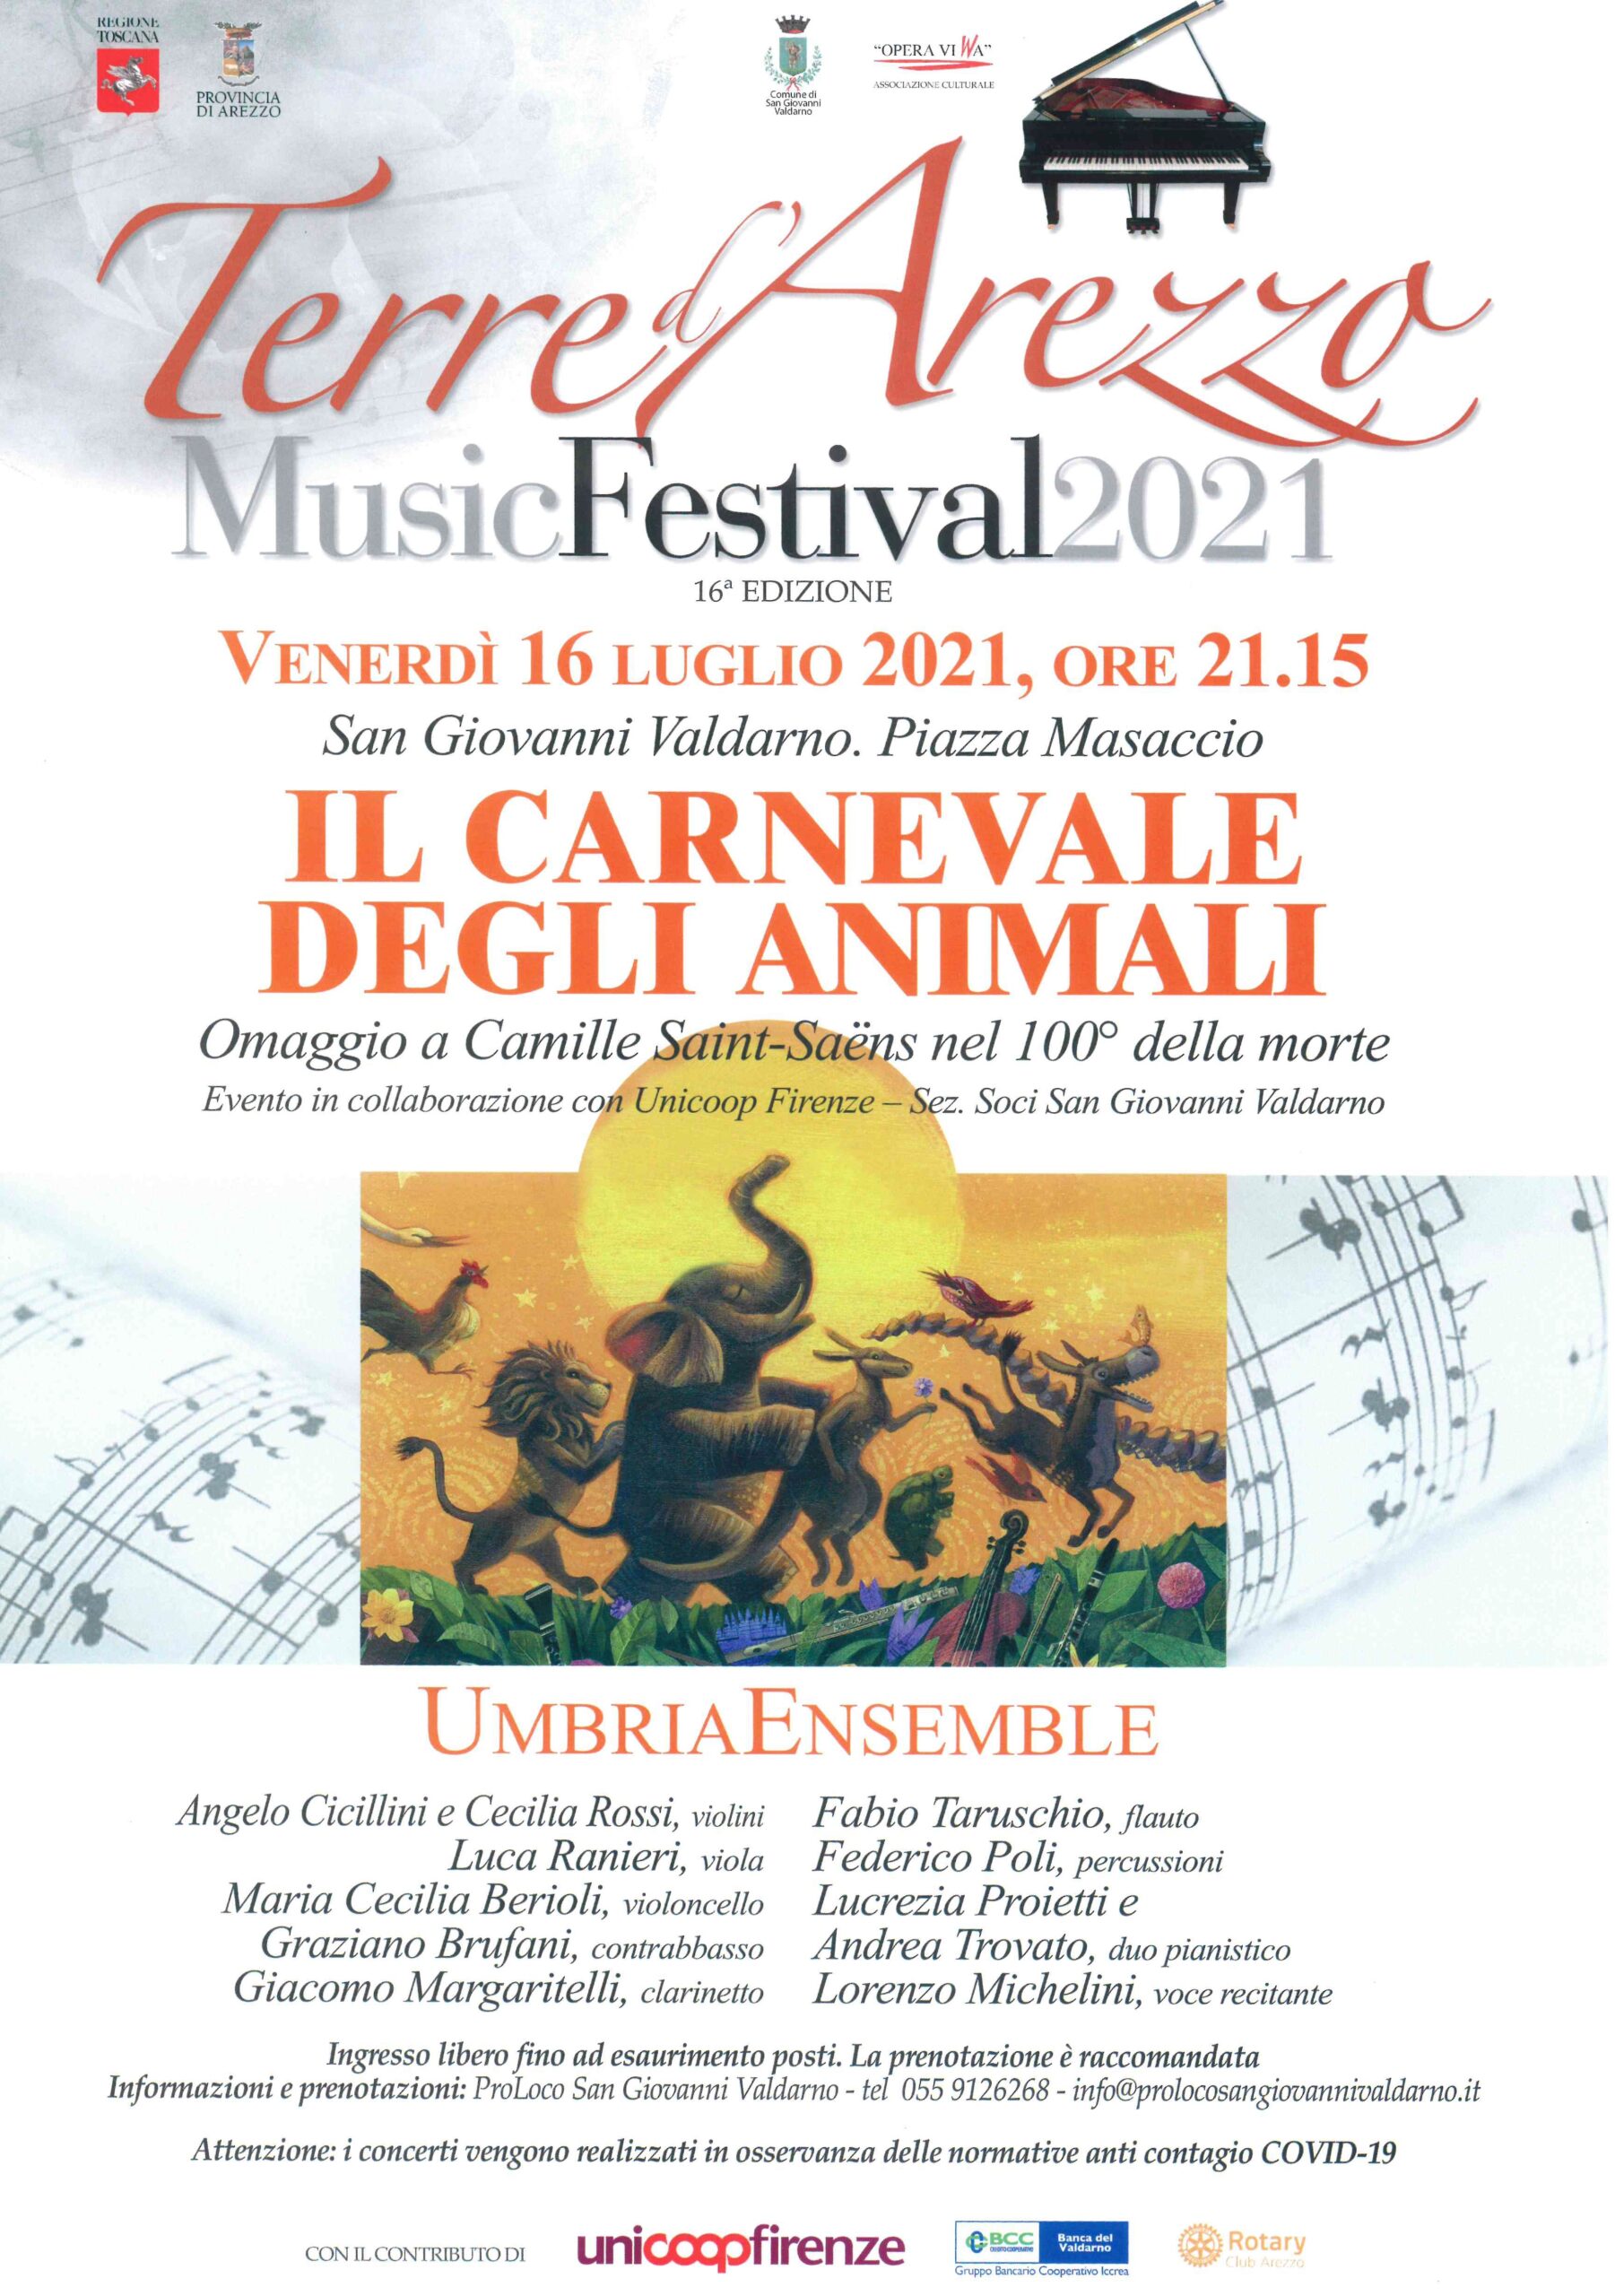 Questa sera il primo appuntamento del Terre d’Arezzo Music Festival